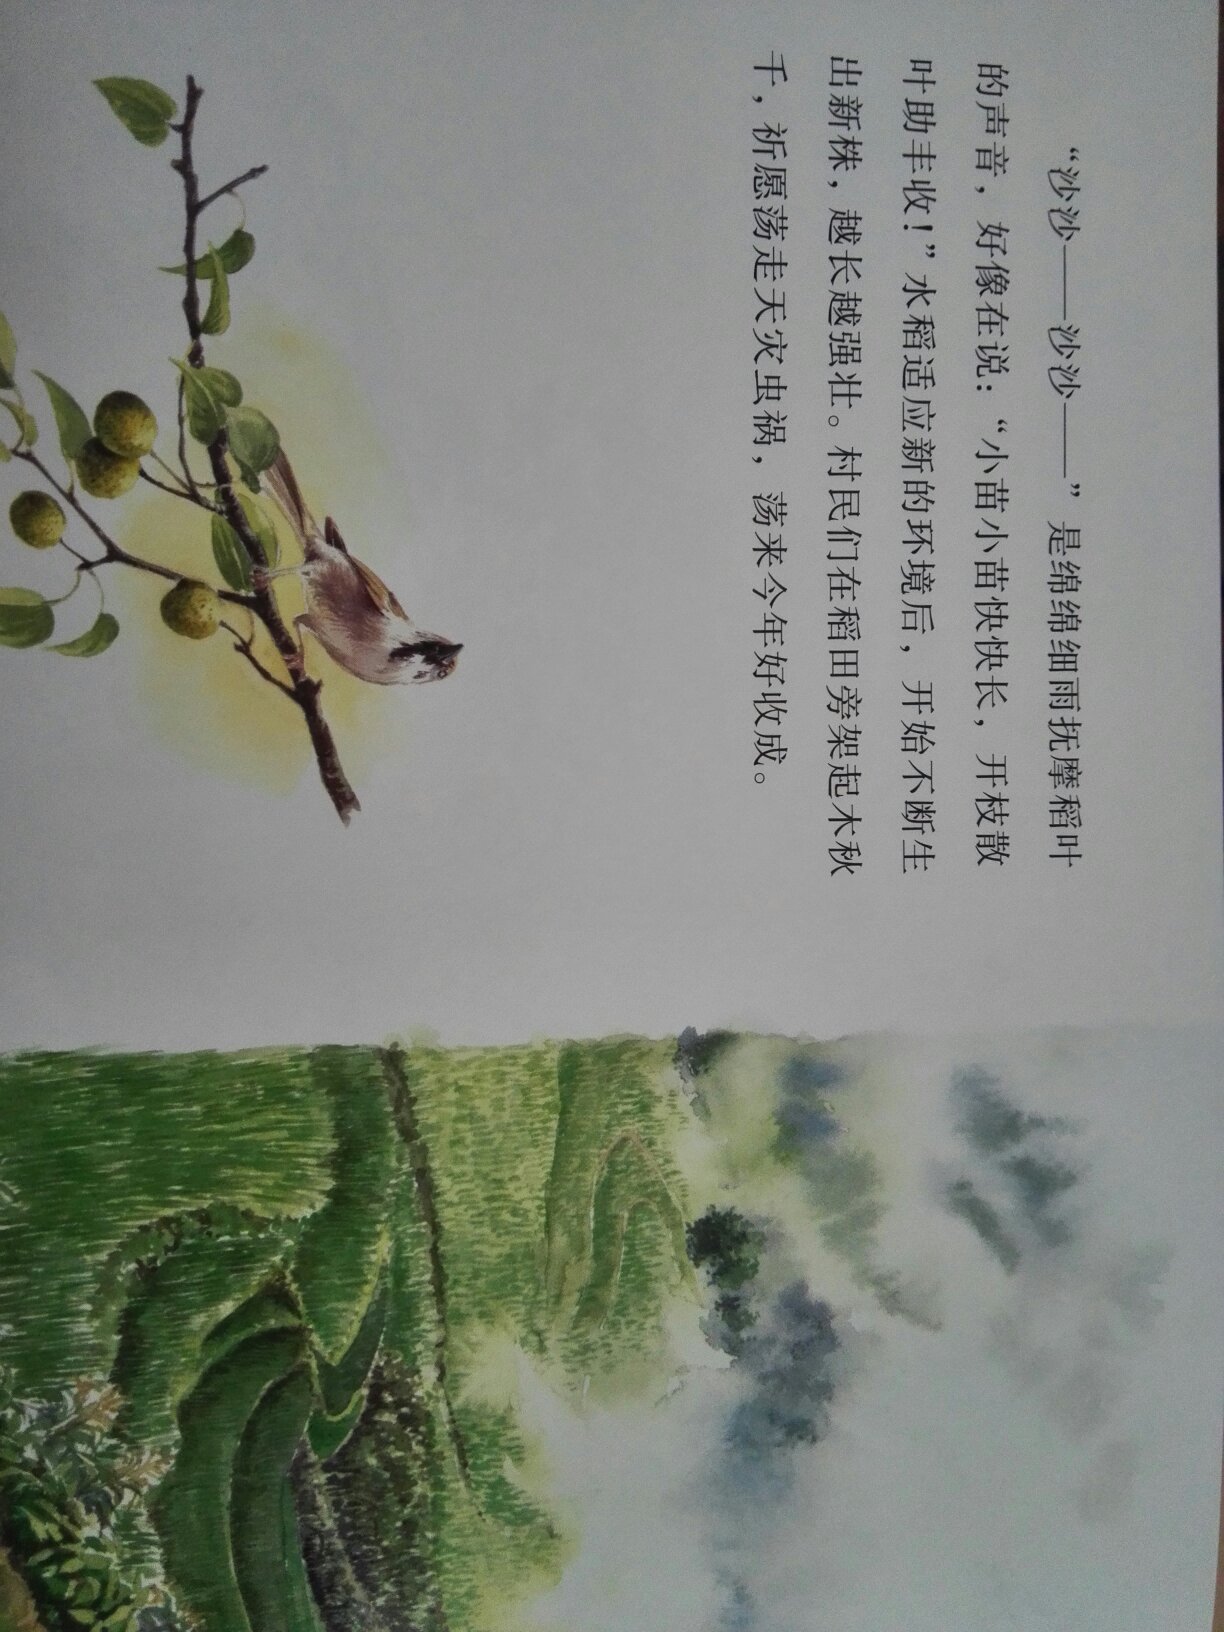 又是一个具有神话的中国故事，画中女子有法术，就像白素贞一样，书的插画很有中国味道，看到牛耕地，就想起小时候的农村景象